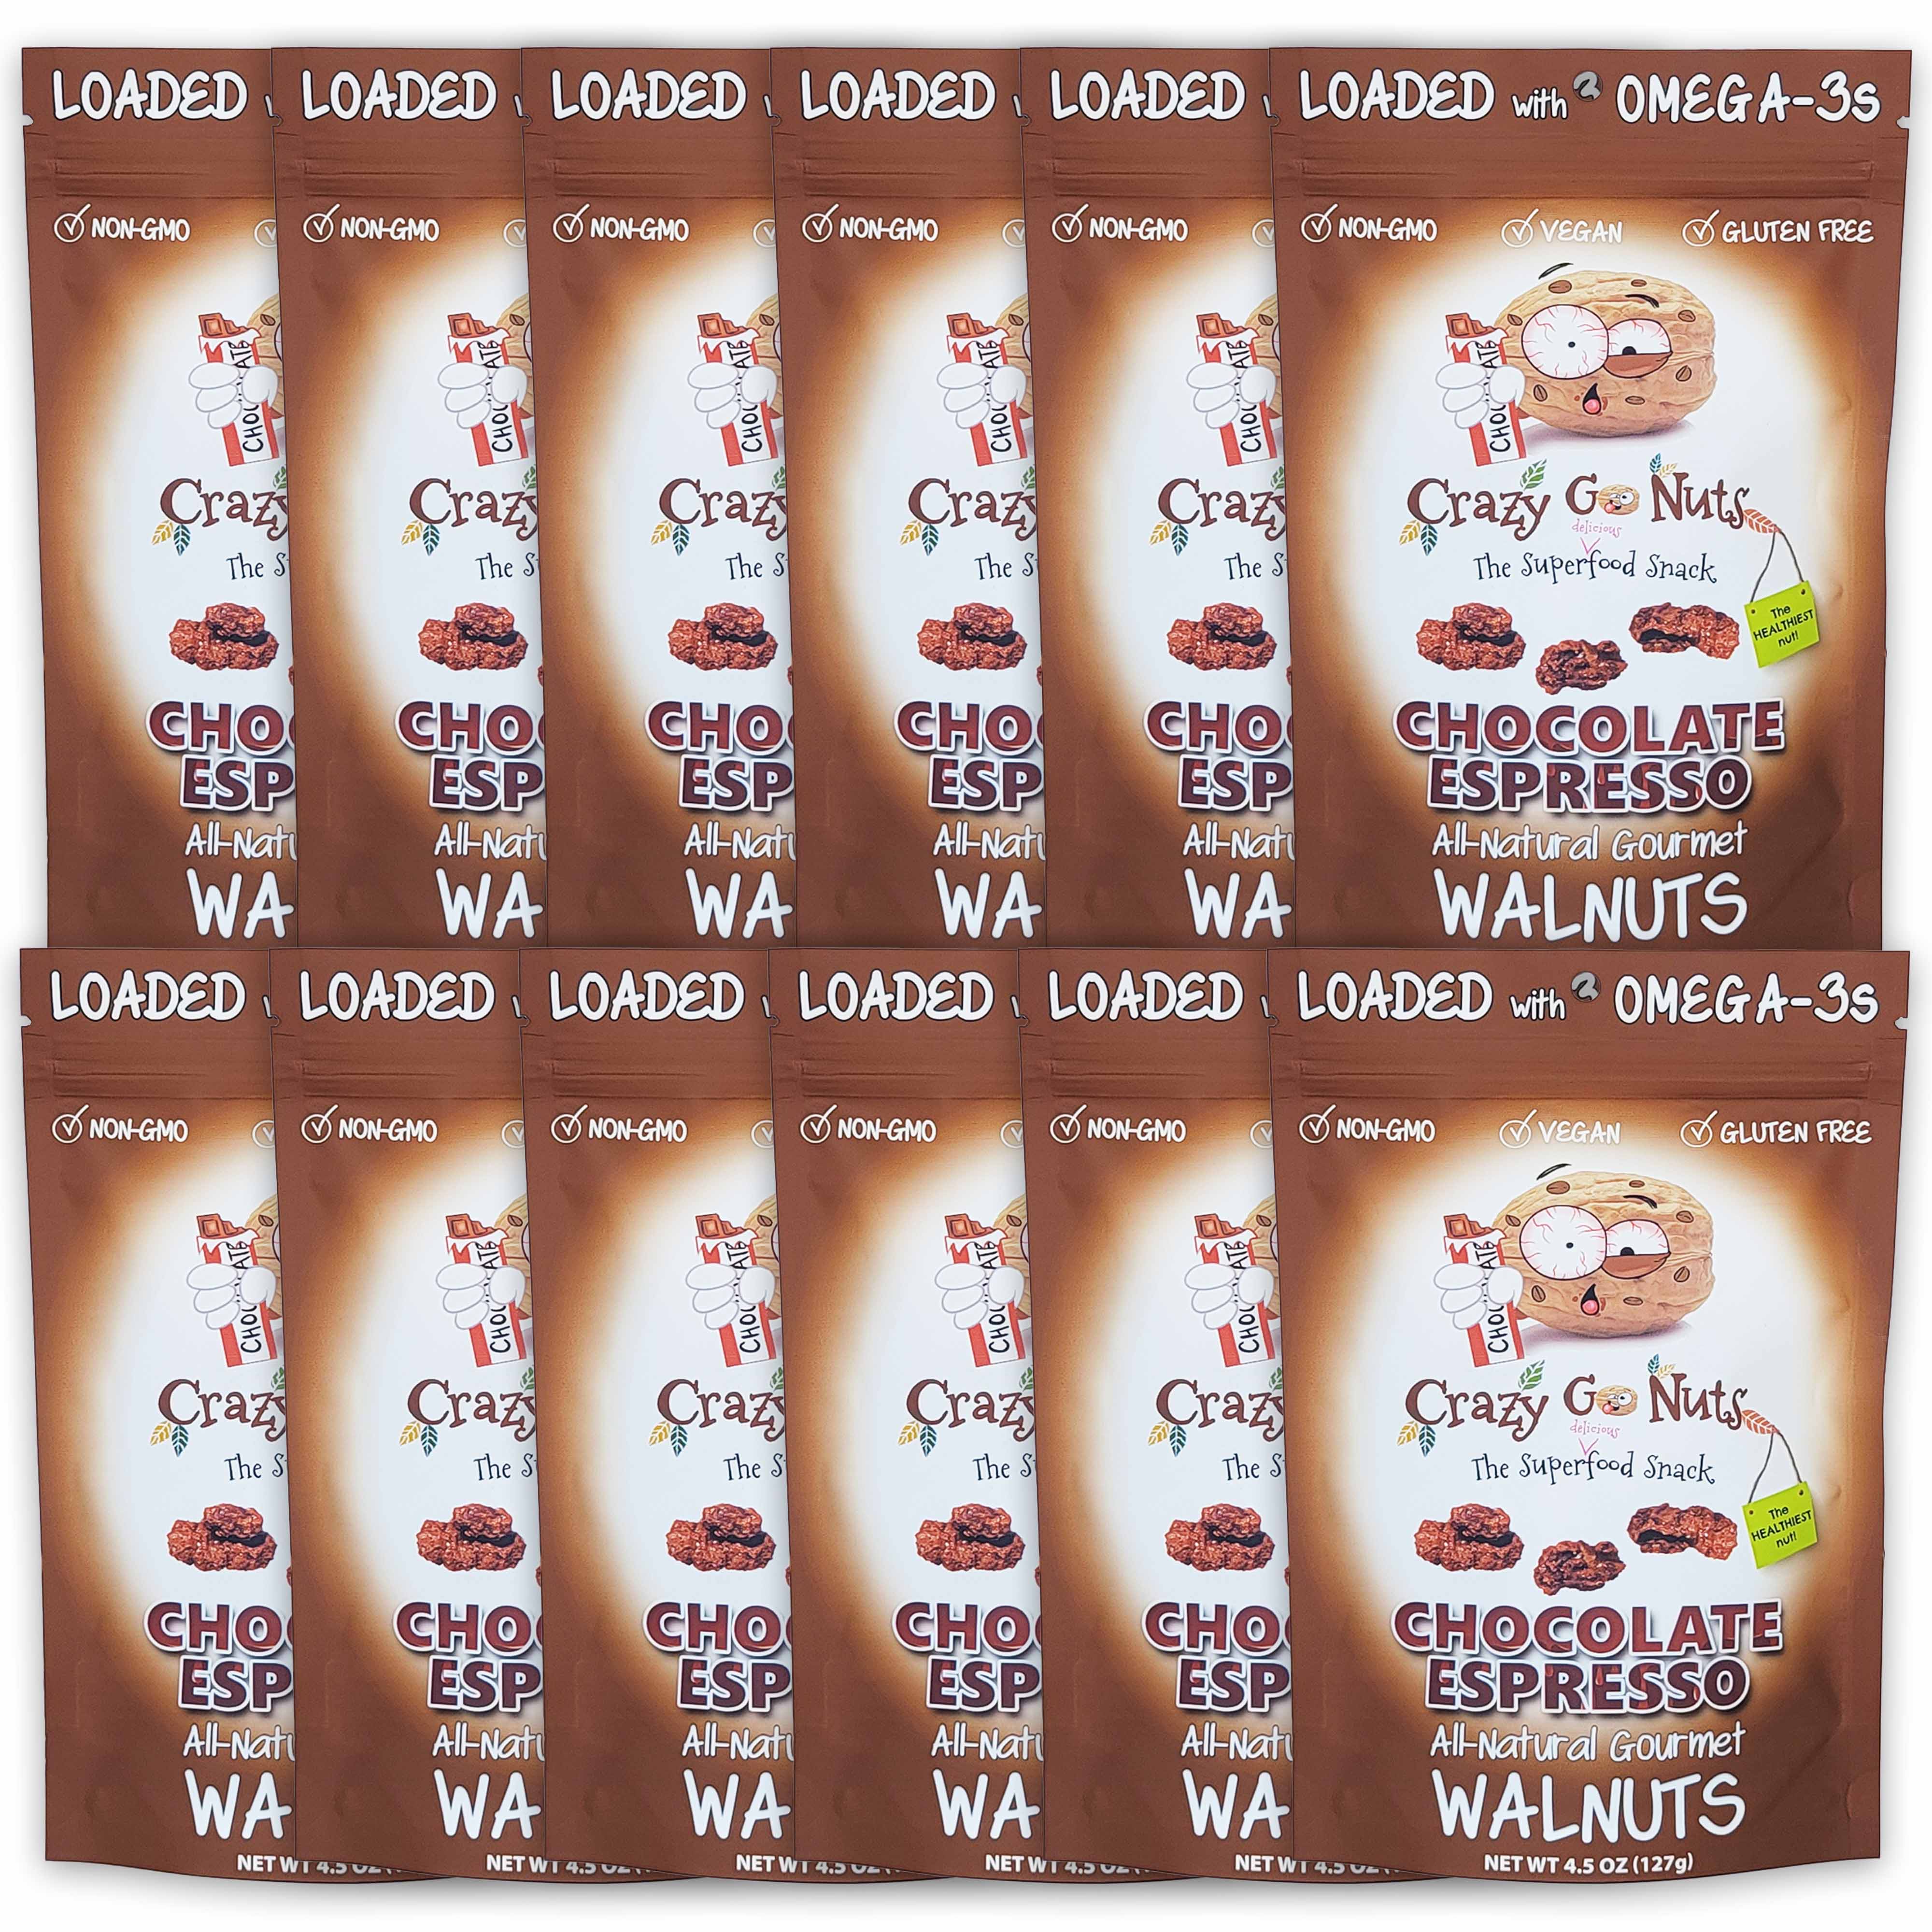 12 bags of chocolate espresso walnut snacks